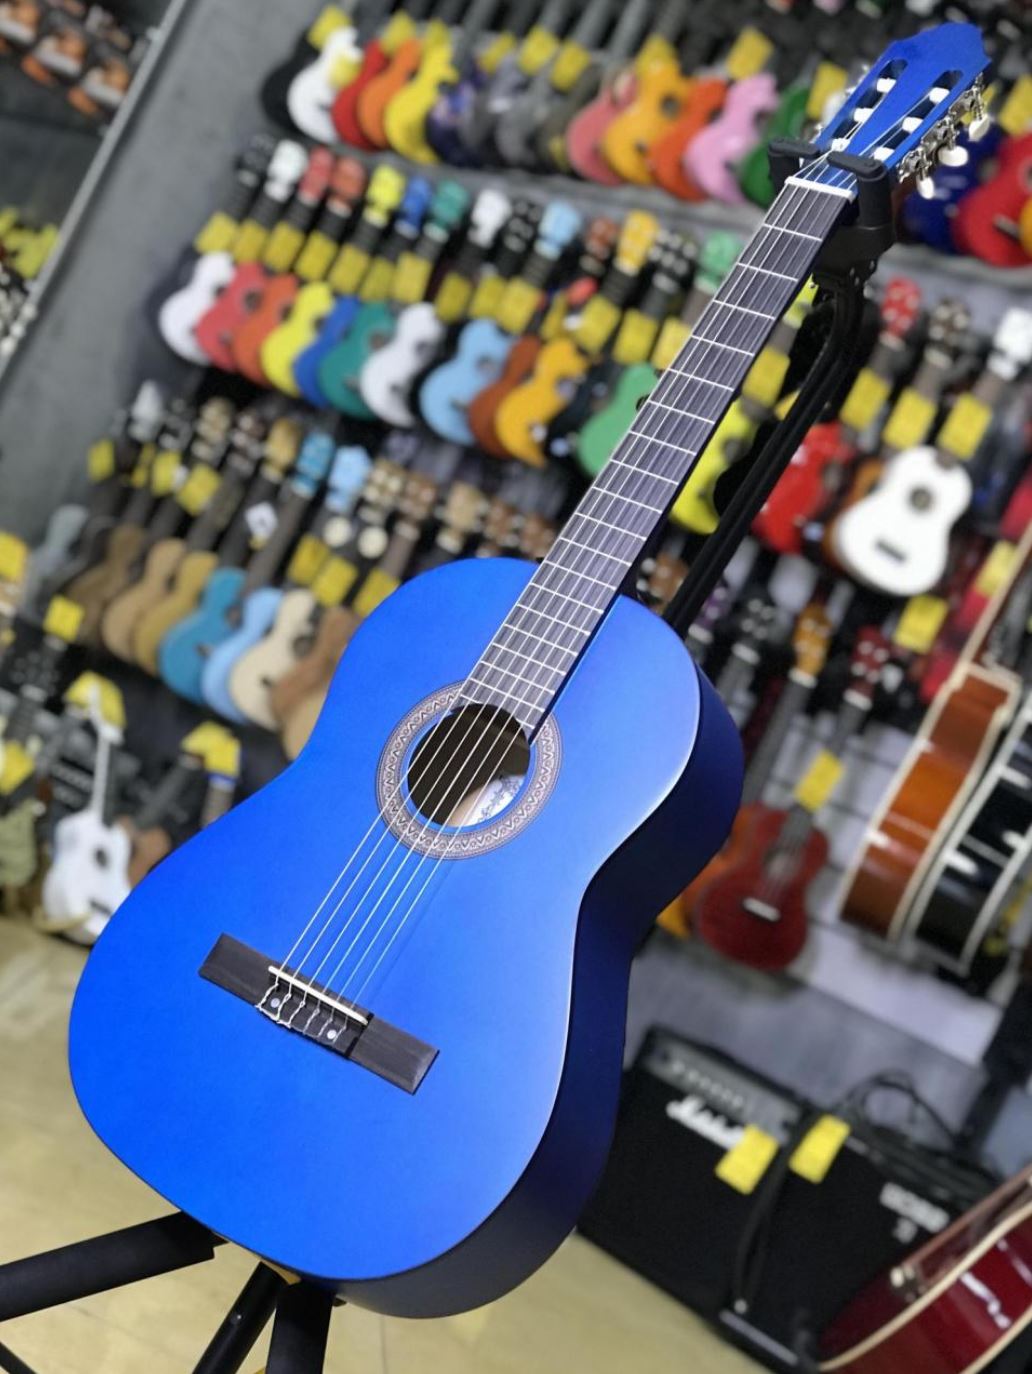 Fabio KM3911 BL классическая гитара шестиструнная полноразмерная 4/4, корпус липа, анкер, цвет синий матовый лак от музыкального магазина МОРОЗ МЬЮЗИК